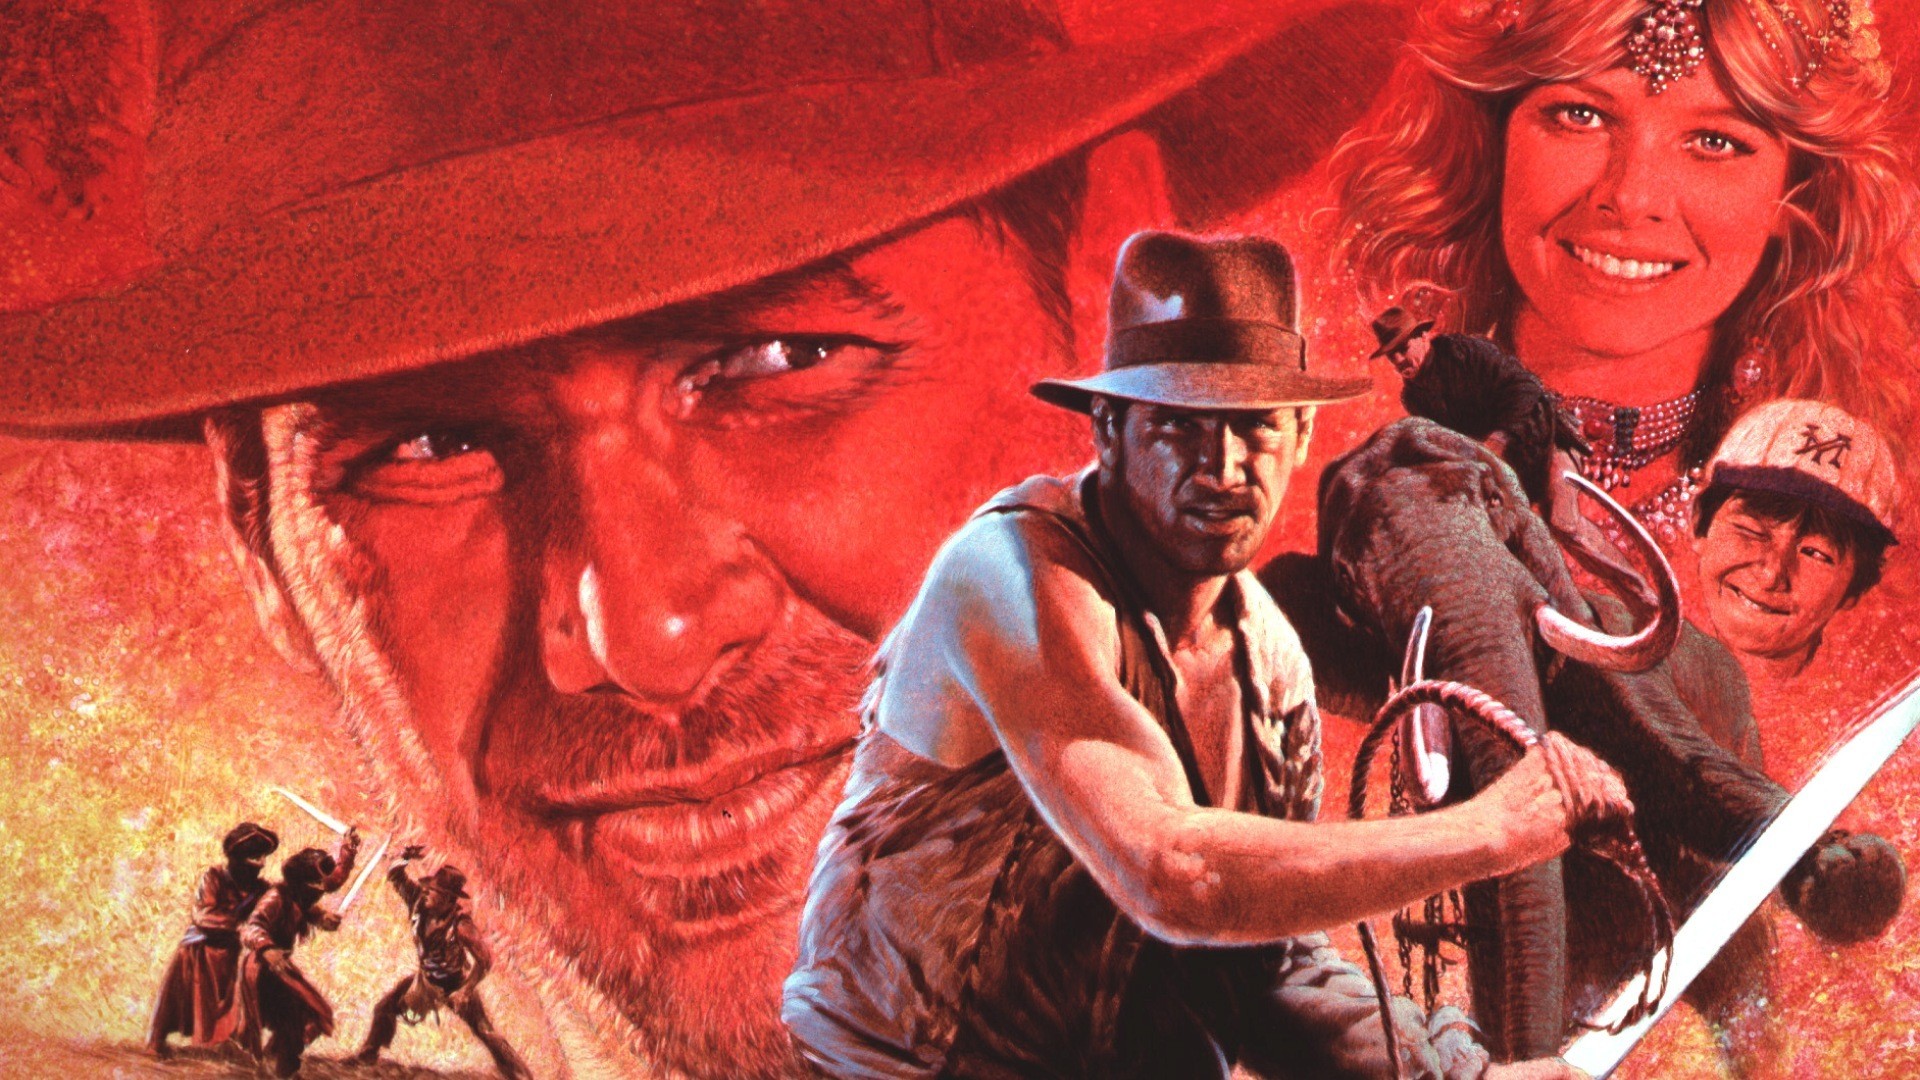 Indiana Jones And The Temple Of Doom Wallpaper